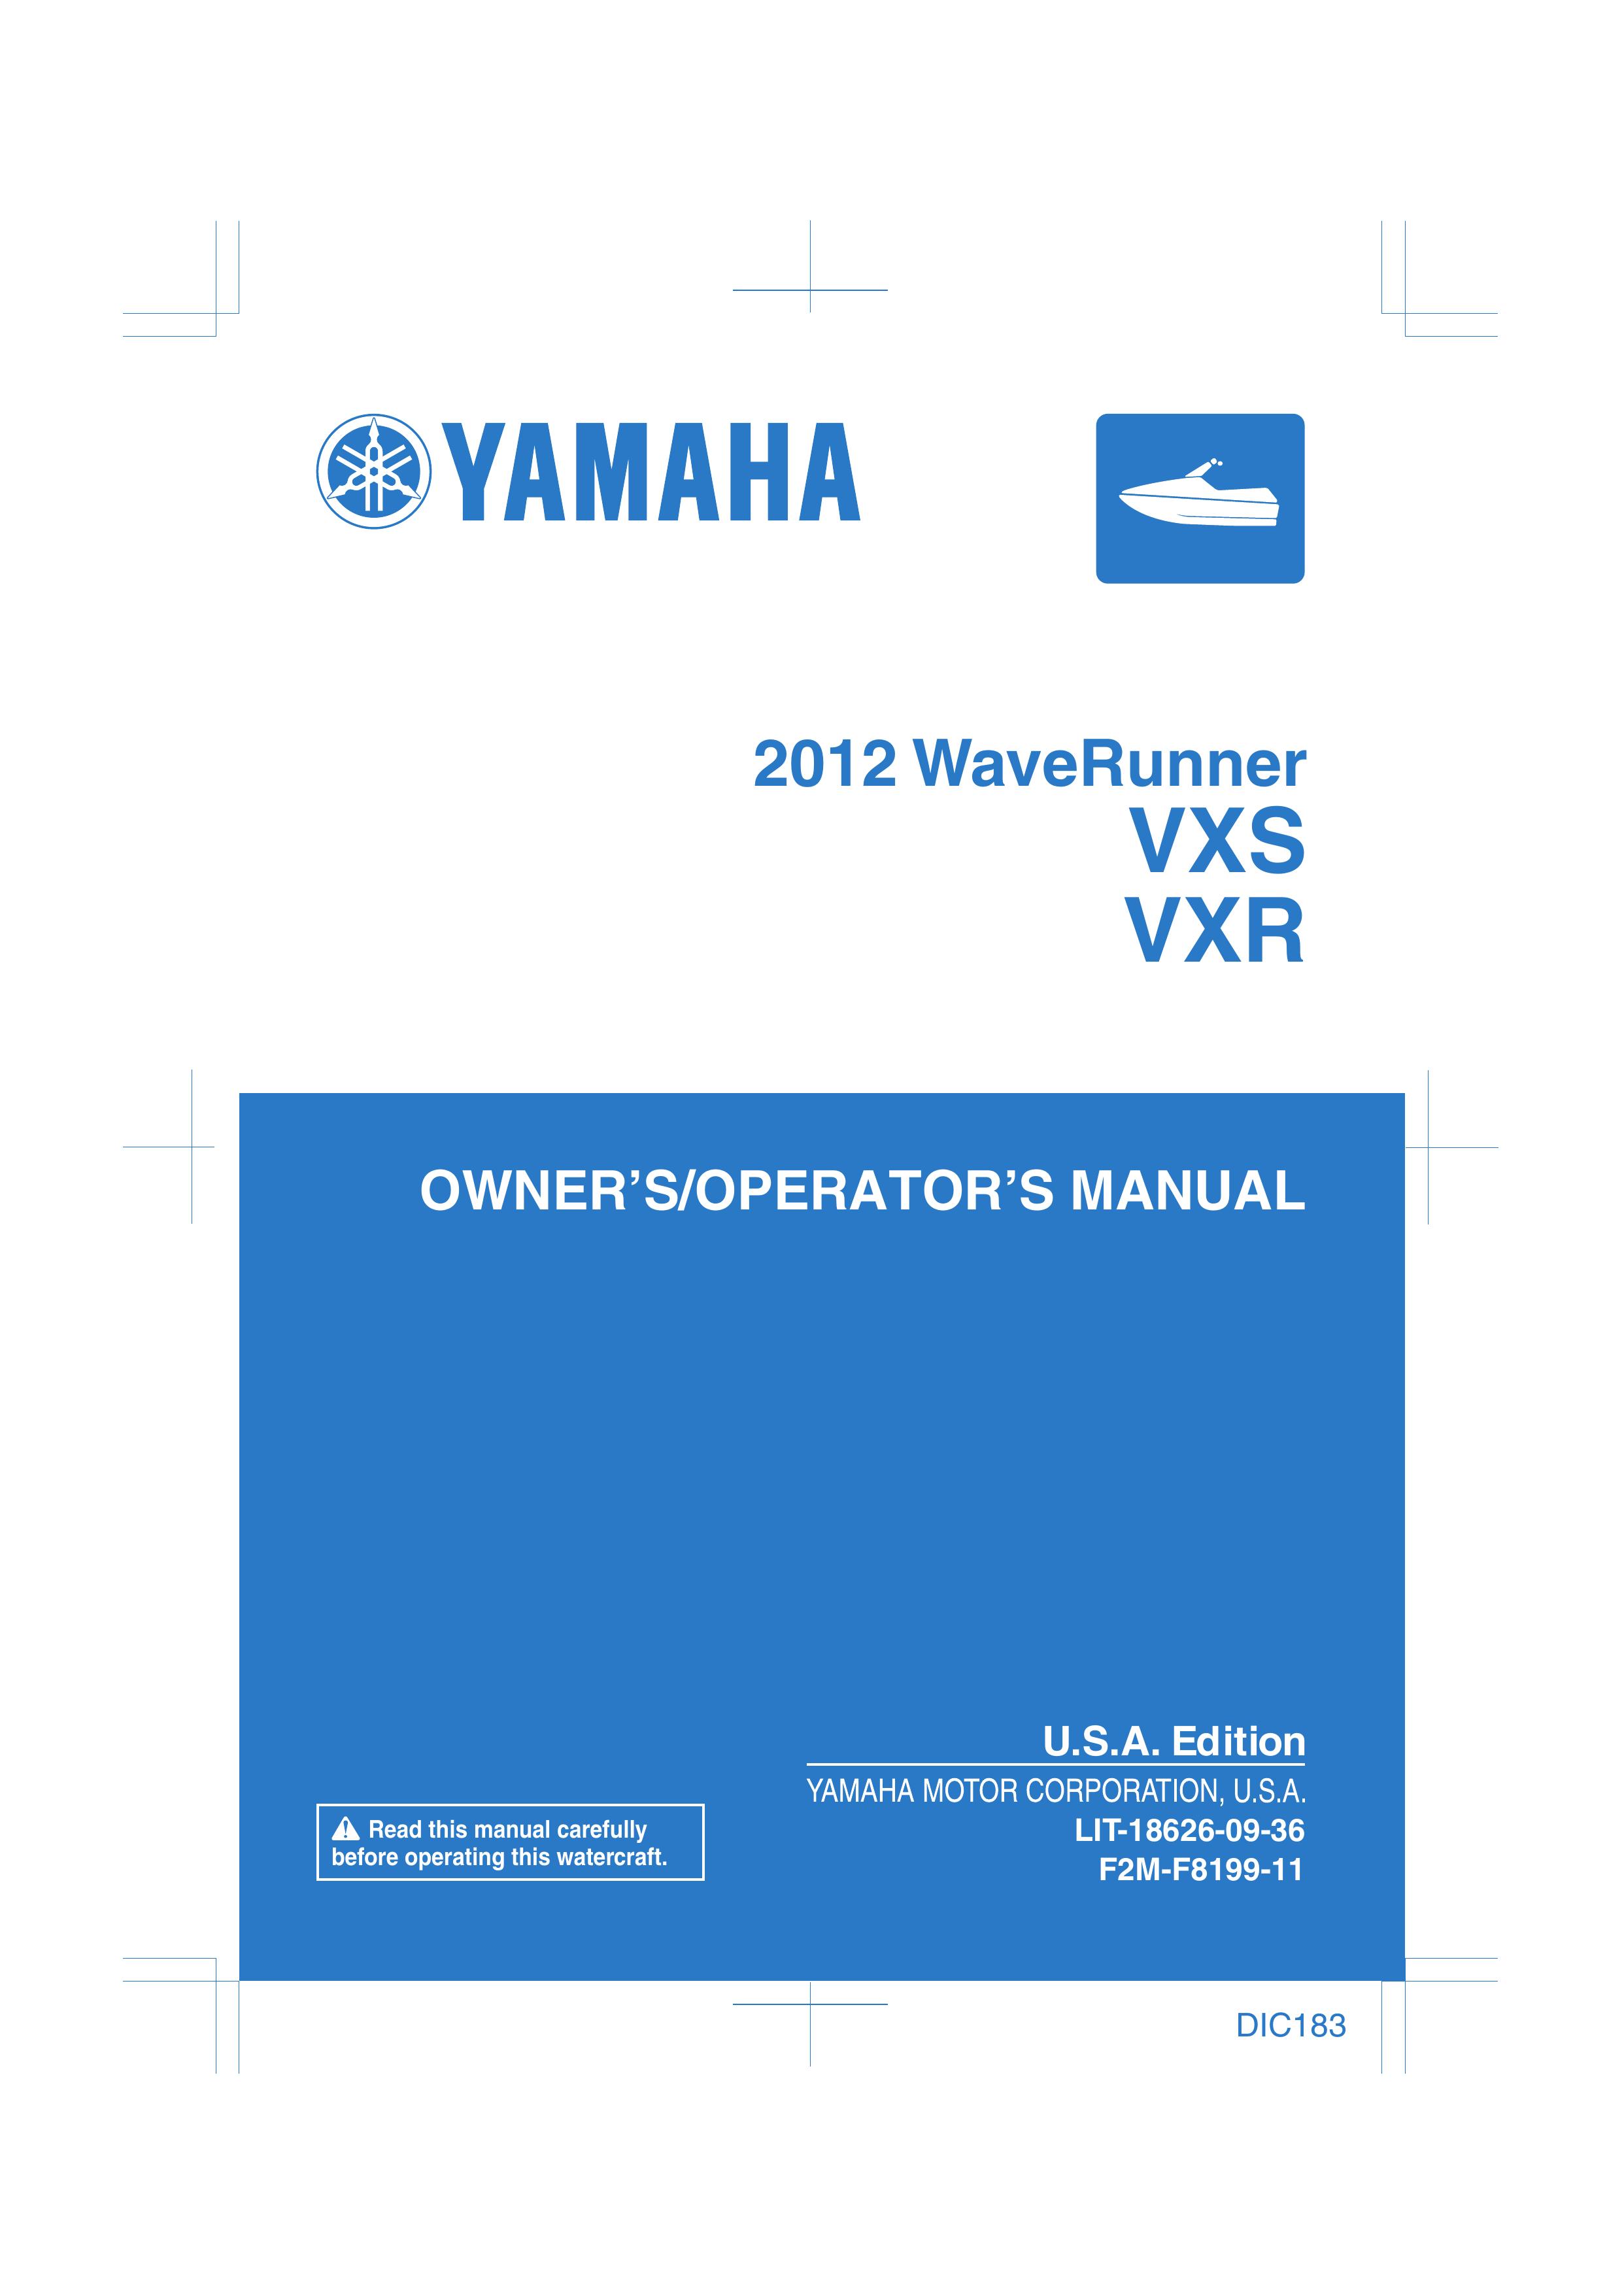 Yamaha VXS Marine Sanitation System User Manual